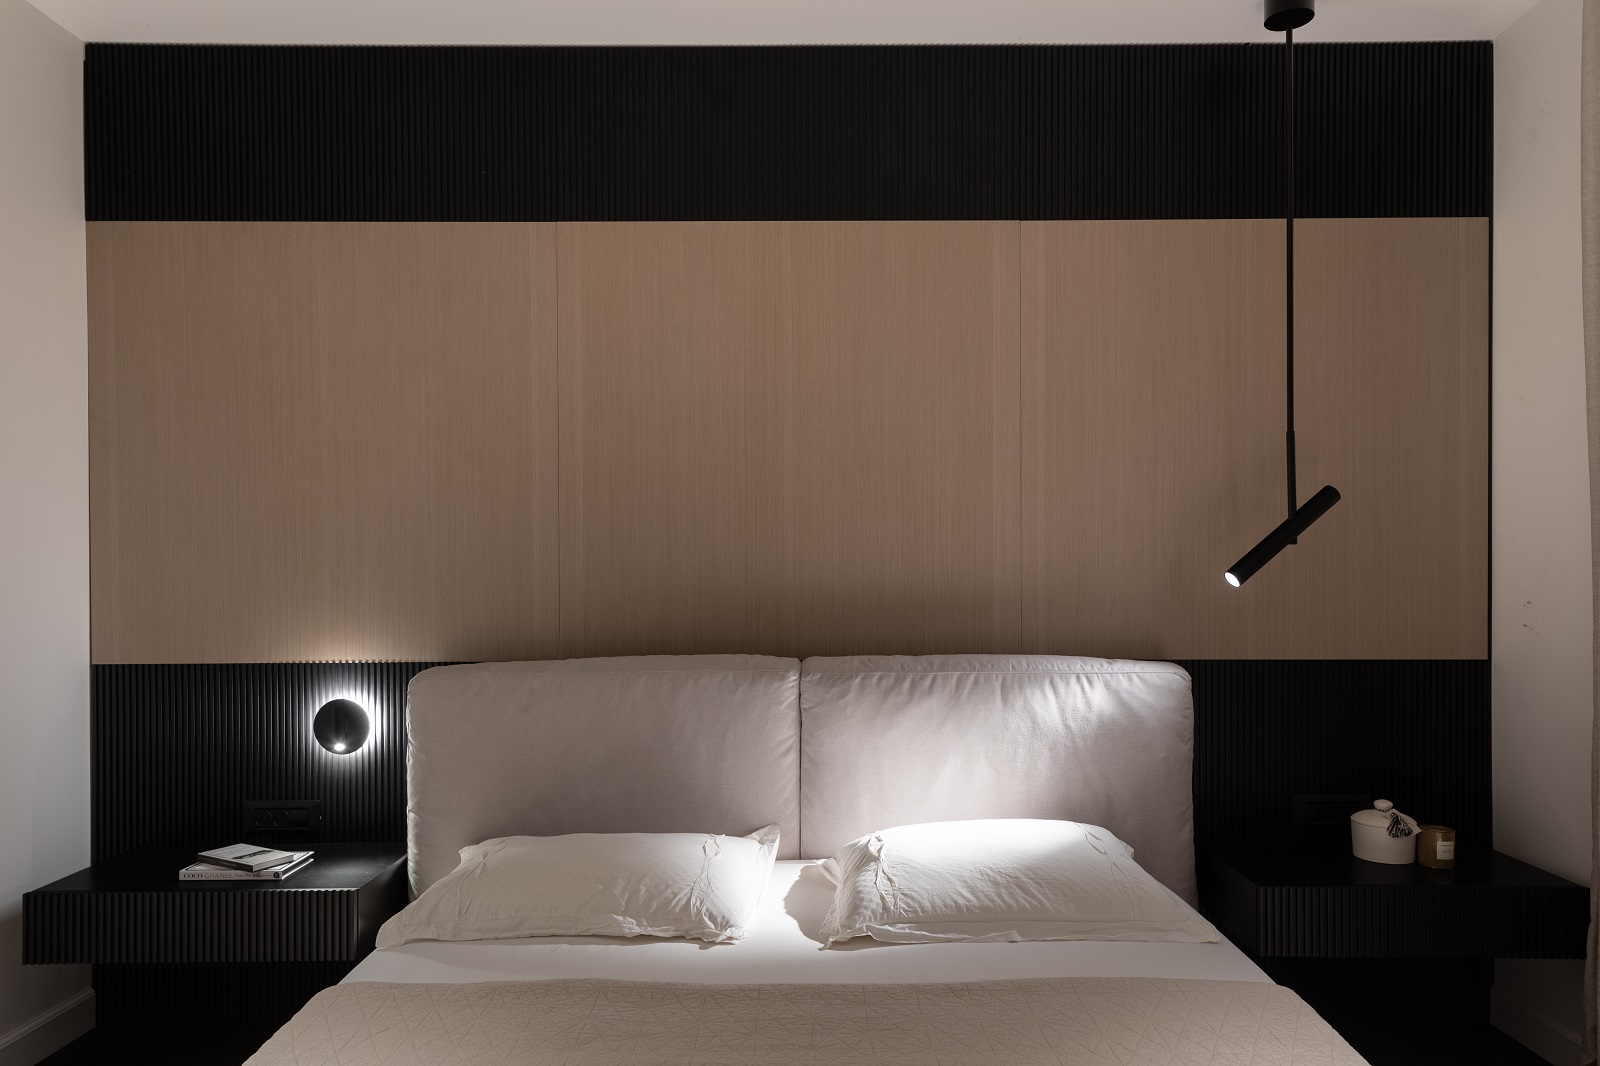 חדר שינה עם חיפוי נגרות בעץ בהיר ושני גופי תאורה דקורטיביים א-סימטריים